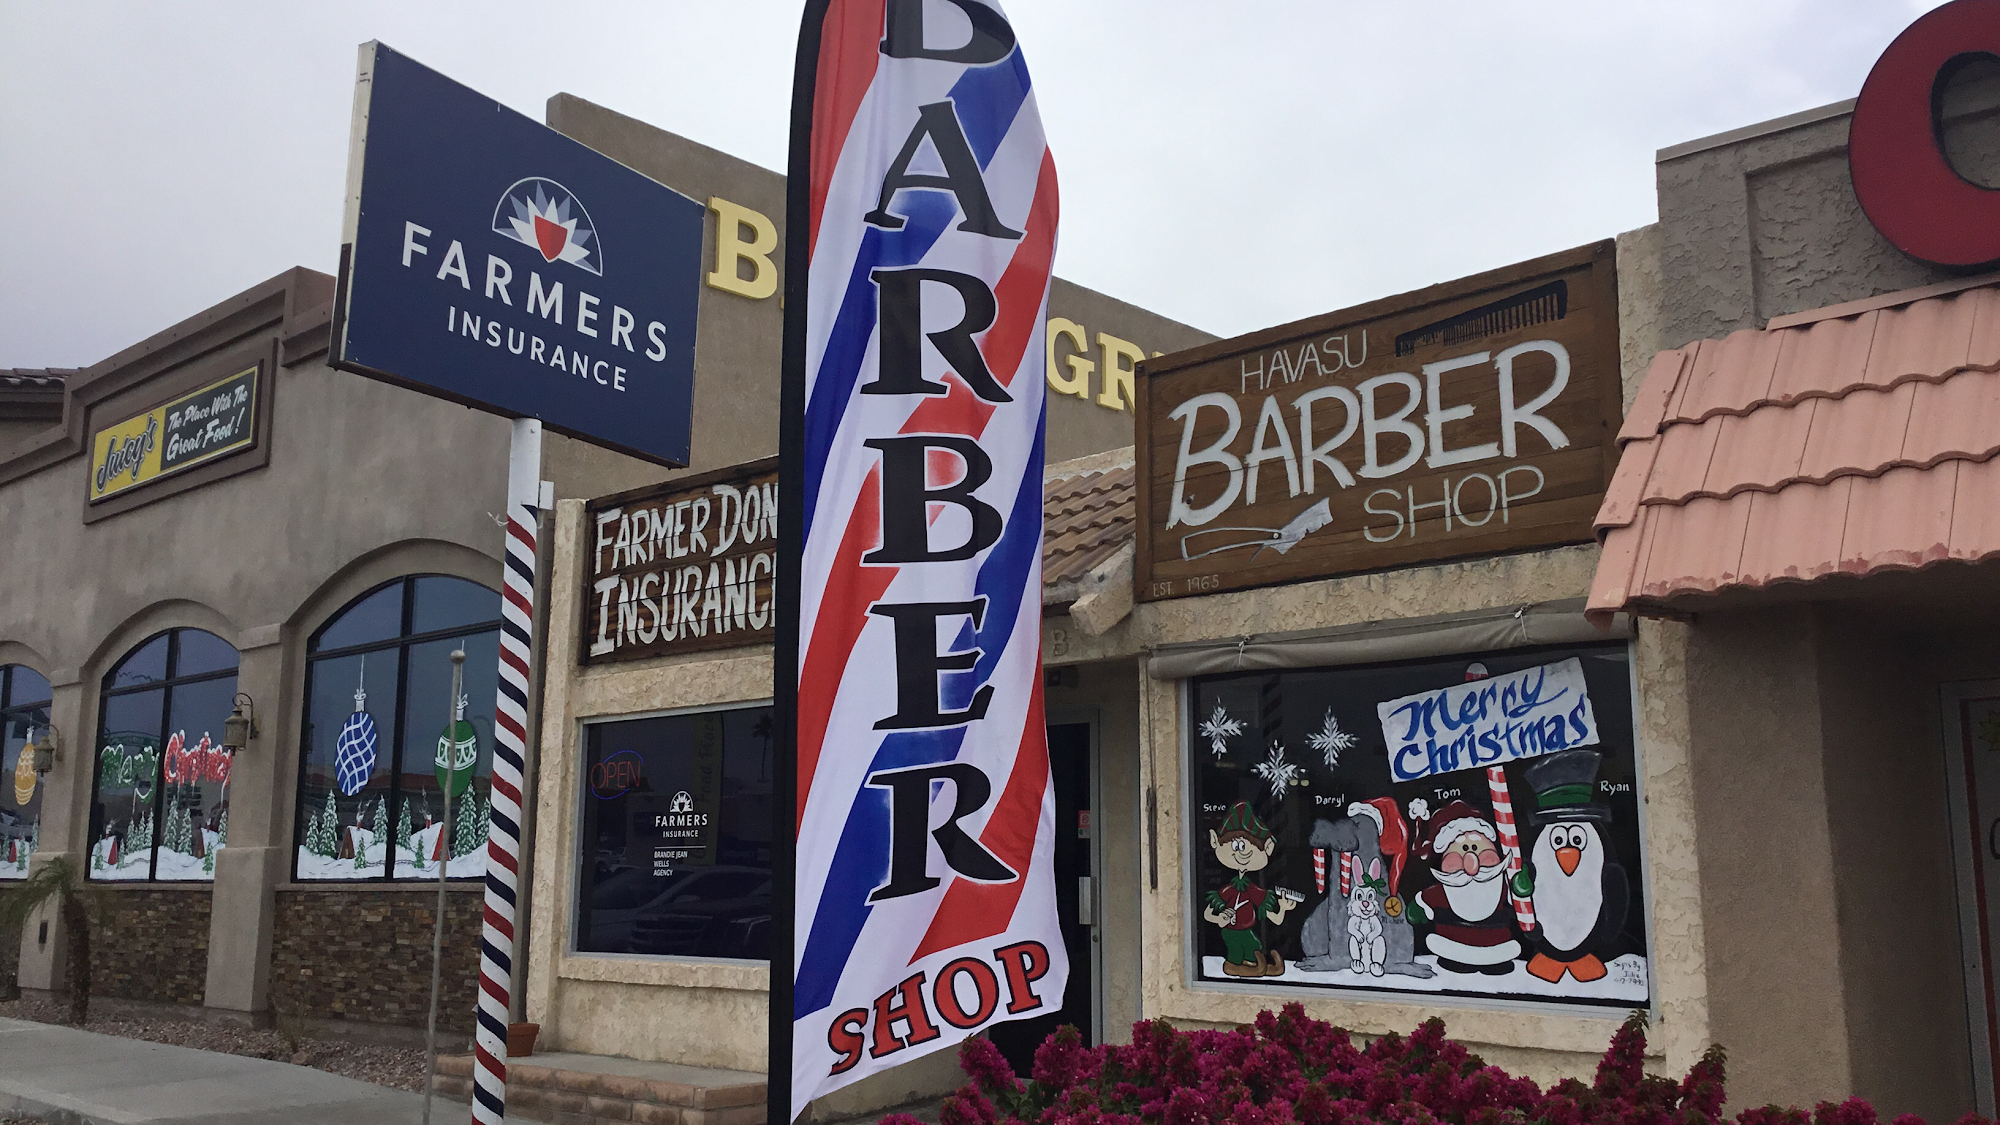 Havasu Barber Shop